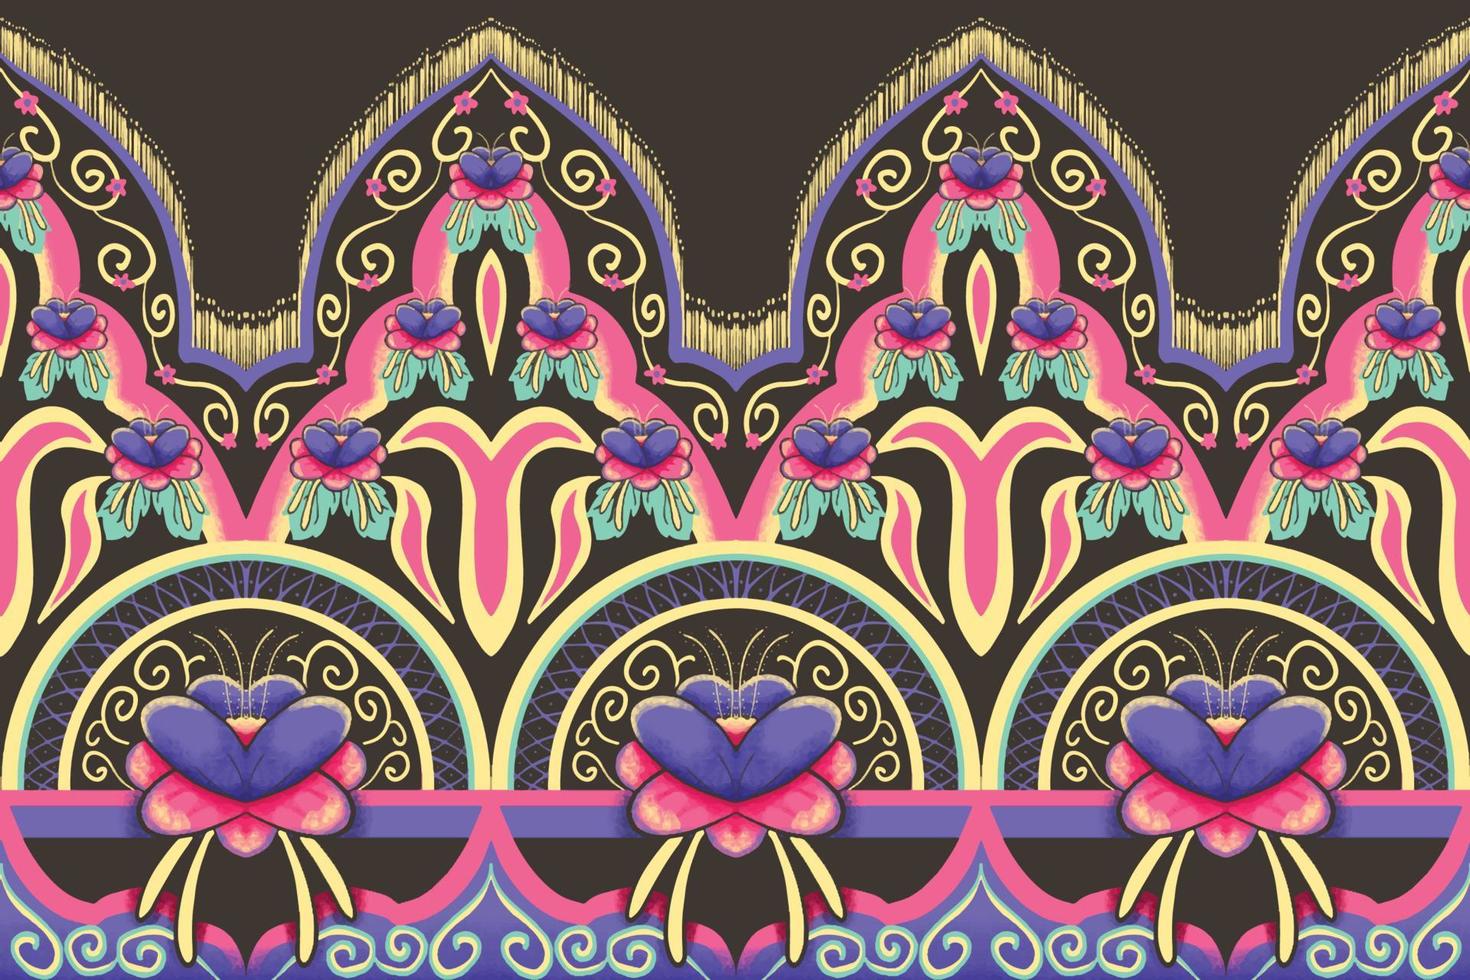 rosa, lila, grön, gul blomma på brunt. geometriskt etniskt orientaliskt mönster traditionell design för bakgrund, matta, tapeter, kläder, omslag, batik, tyg, vektorillustrationbroderistil vektor